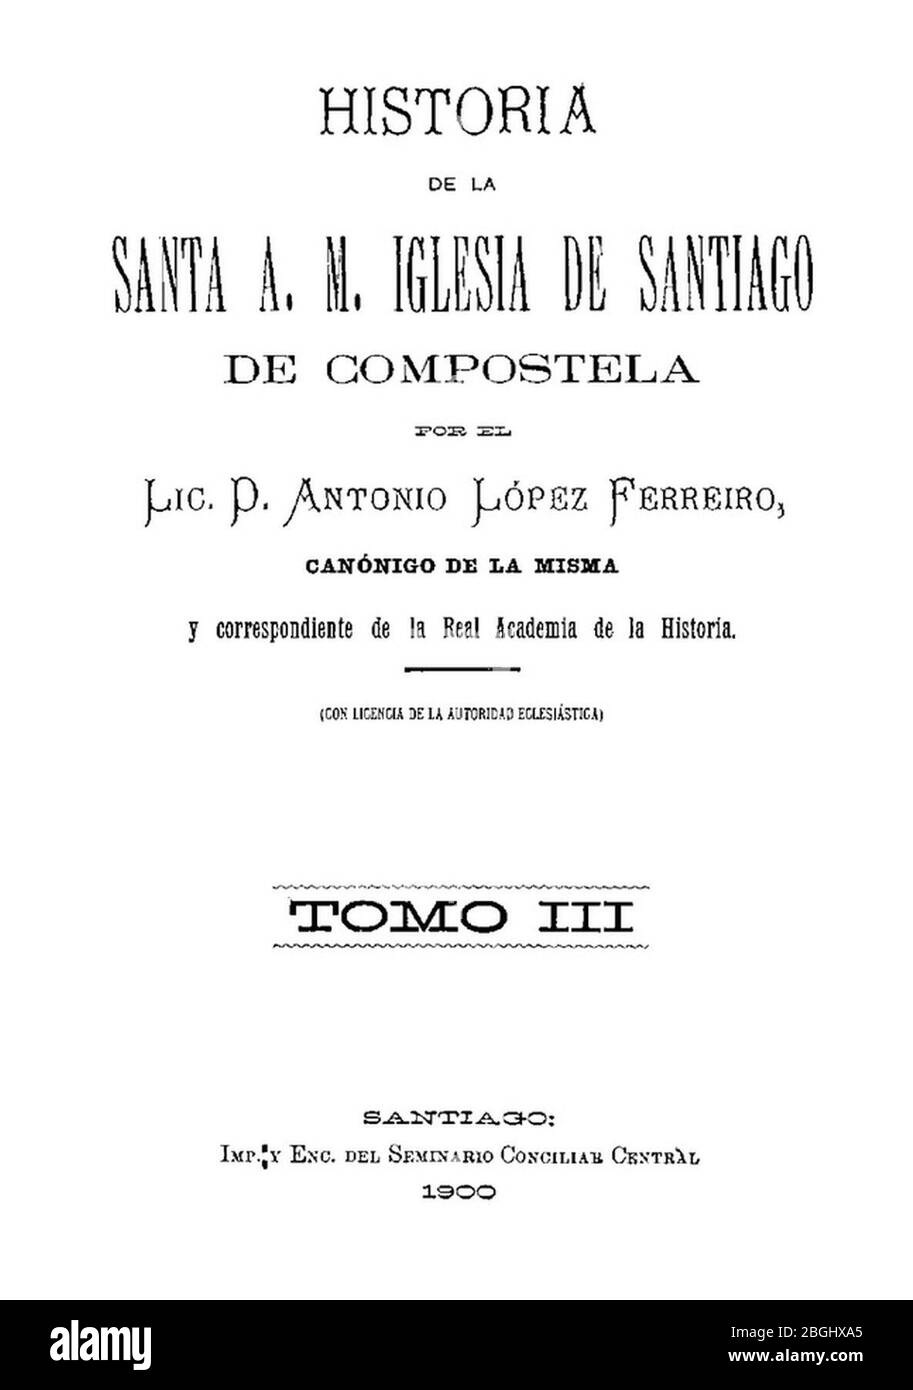 Historia de la Santa A. M. Iglesia de Santiago de Compostela por el Lic. D. Antonio López Ferreiro, canónigo de la misma, 1900, tomo III Foto de stock